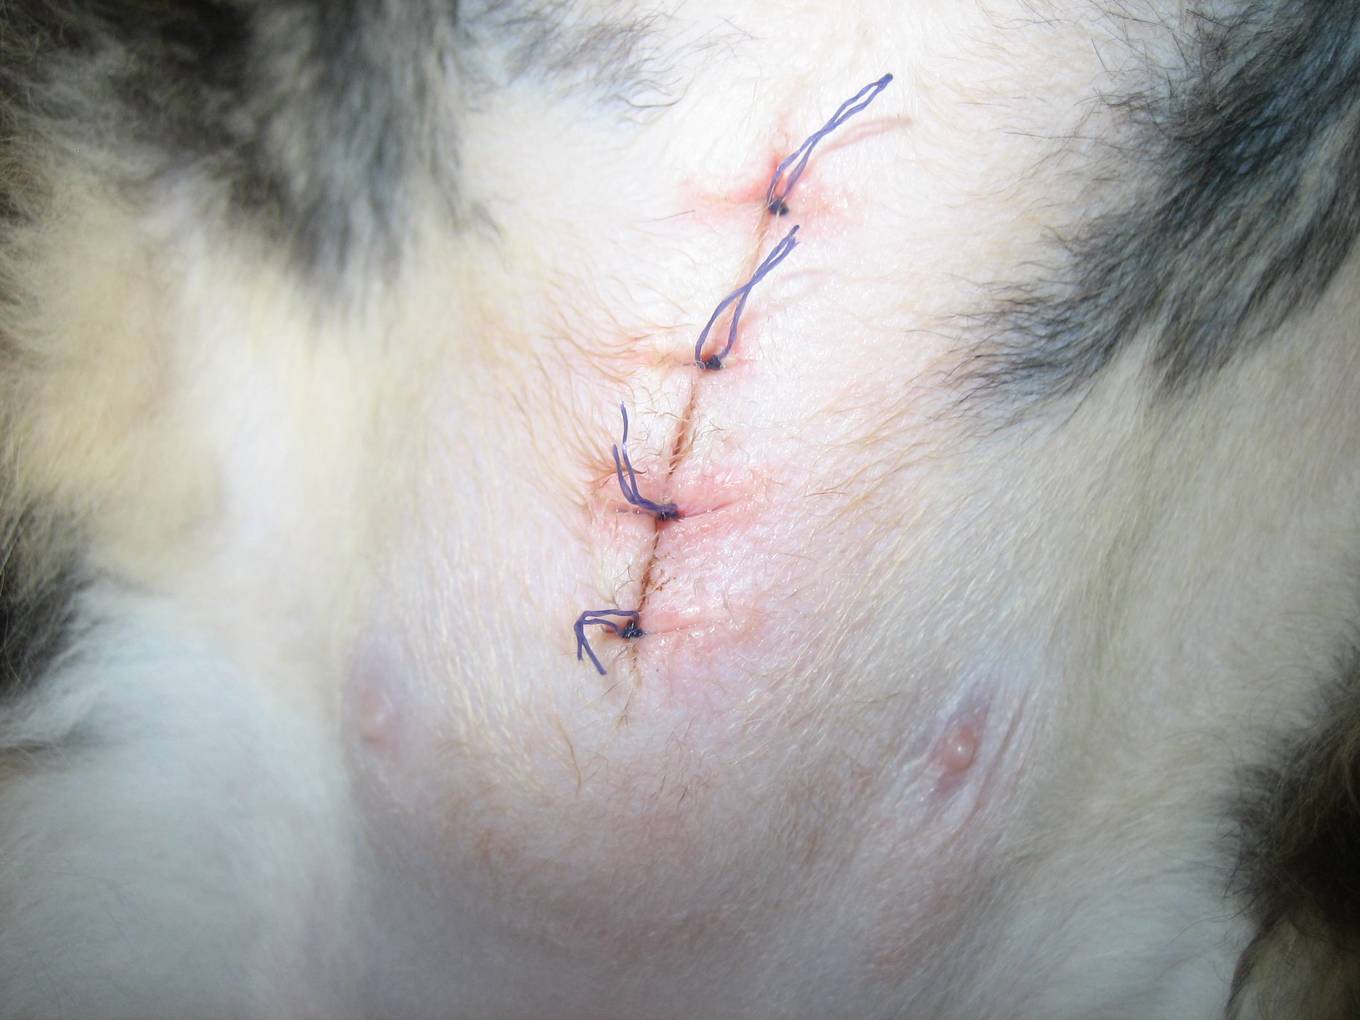 прорезавшийся простой узловатый шов после стерилизации (слишком большой отступ от края раны и избыточное натяжение шва)